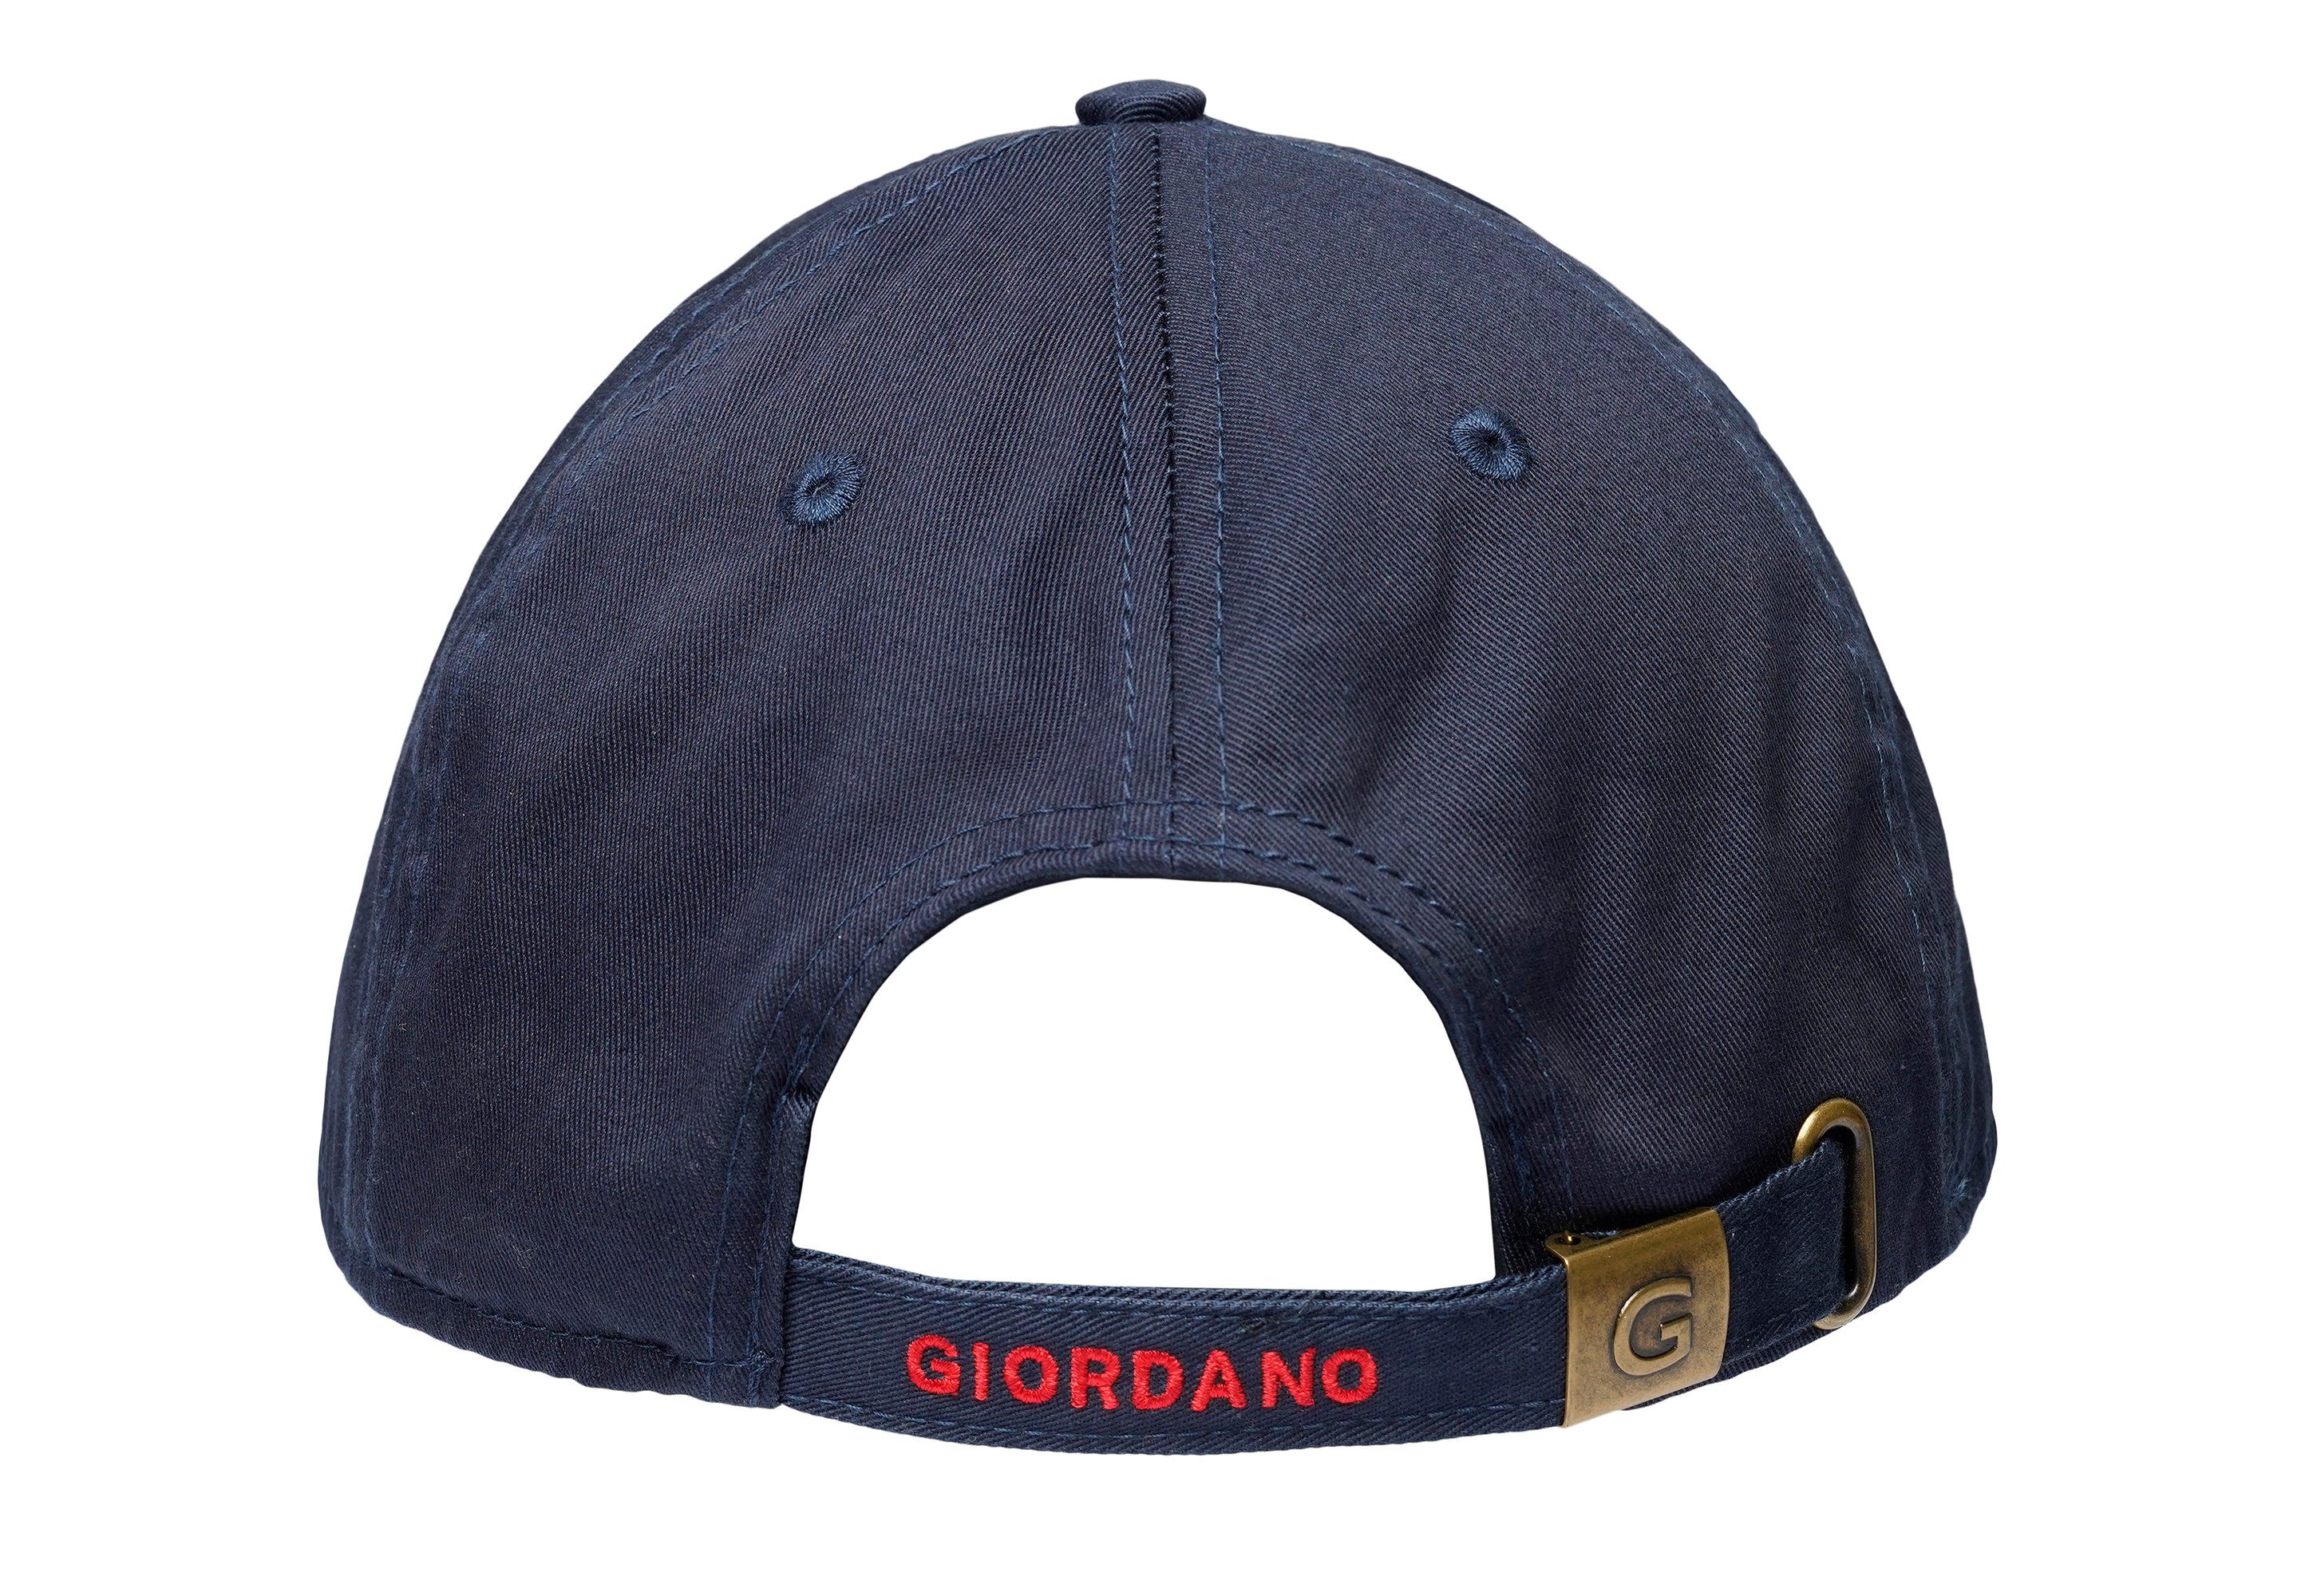 der logo G auf dunkelblau Front Cap mit Patch GIORDANO Baseball